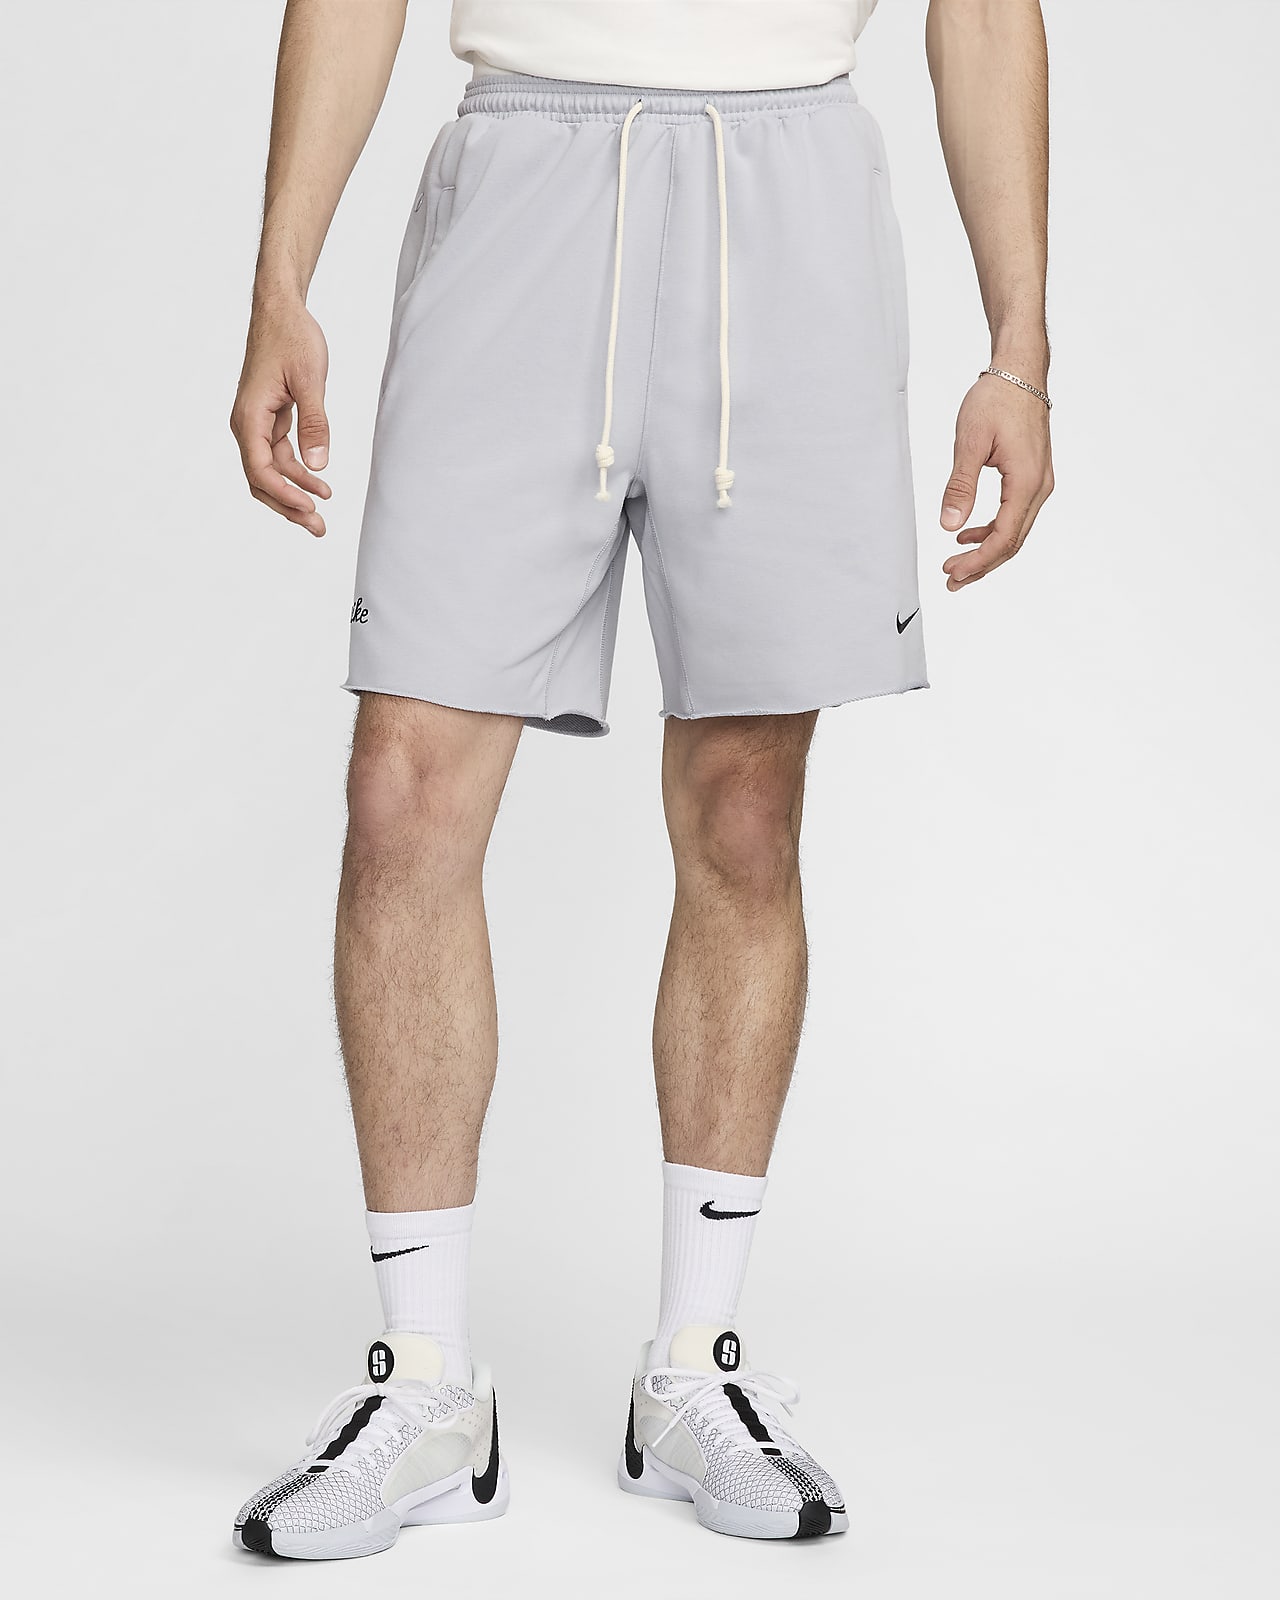 Short de basket 20 cm Dri-FIT Nike Standard Issue pour homme